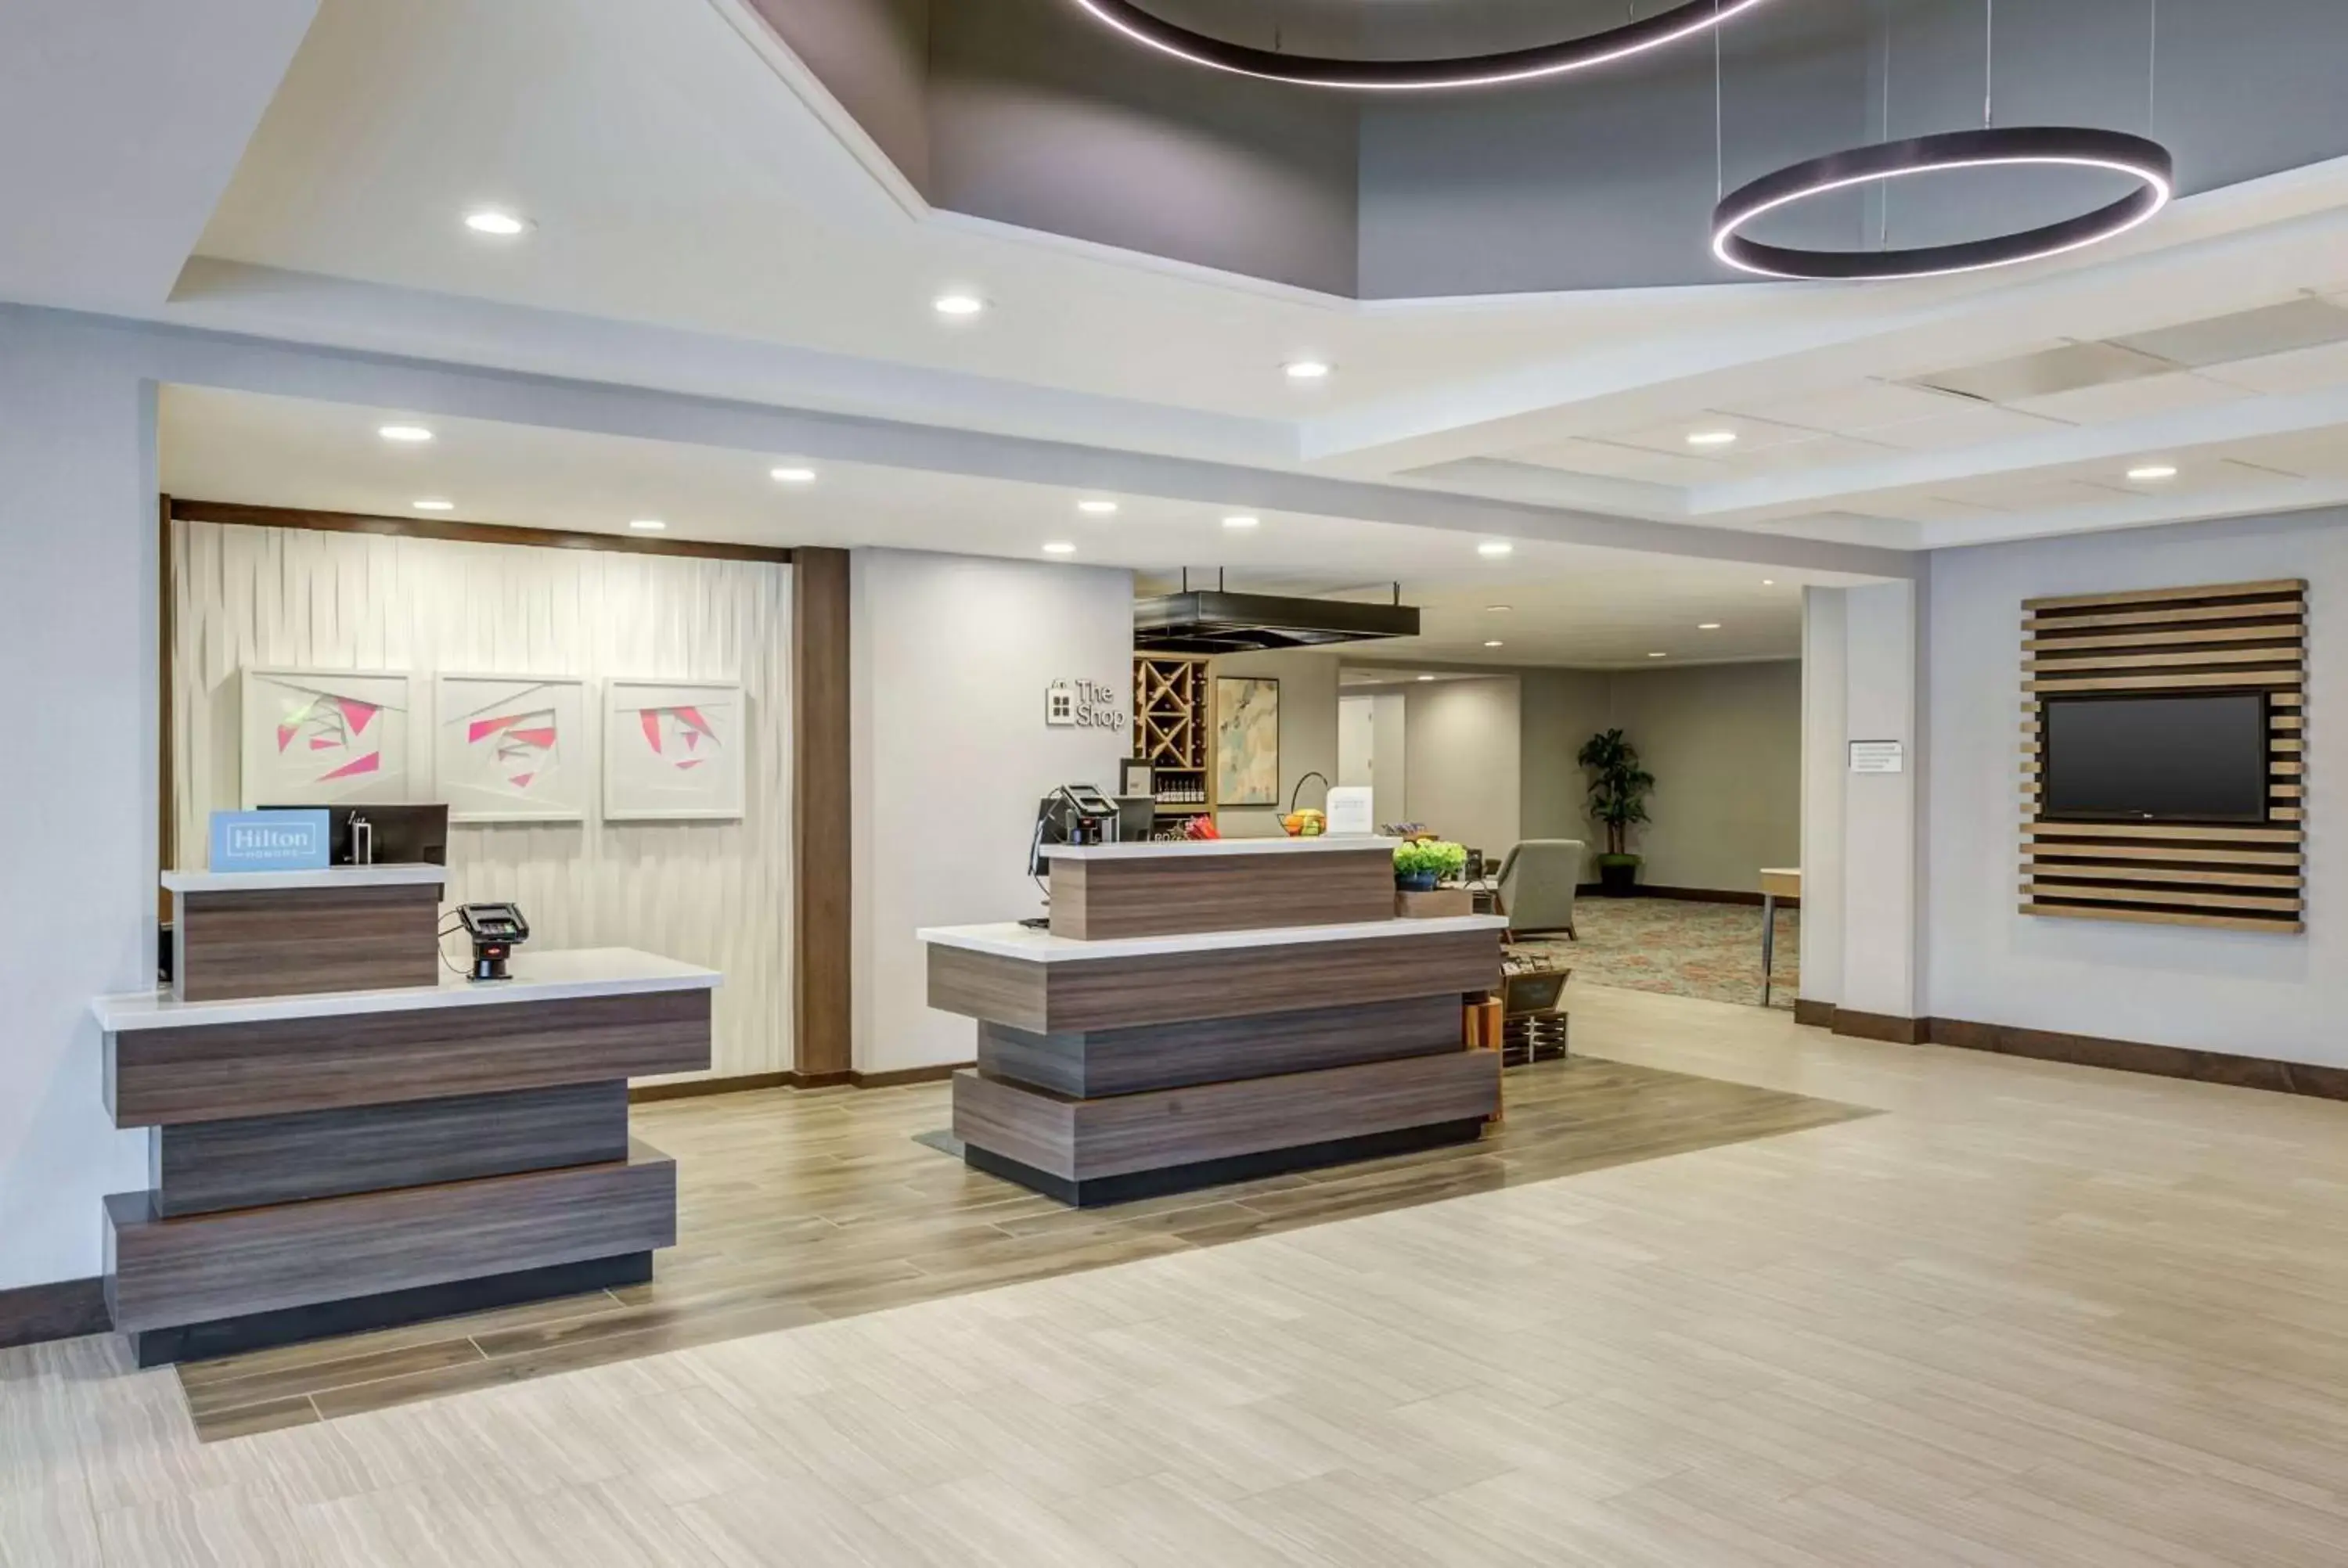 Lobby or reception, Lobby/Reception in Hilton Garden Inn Boston Waltham